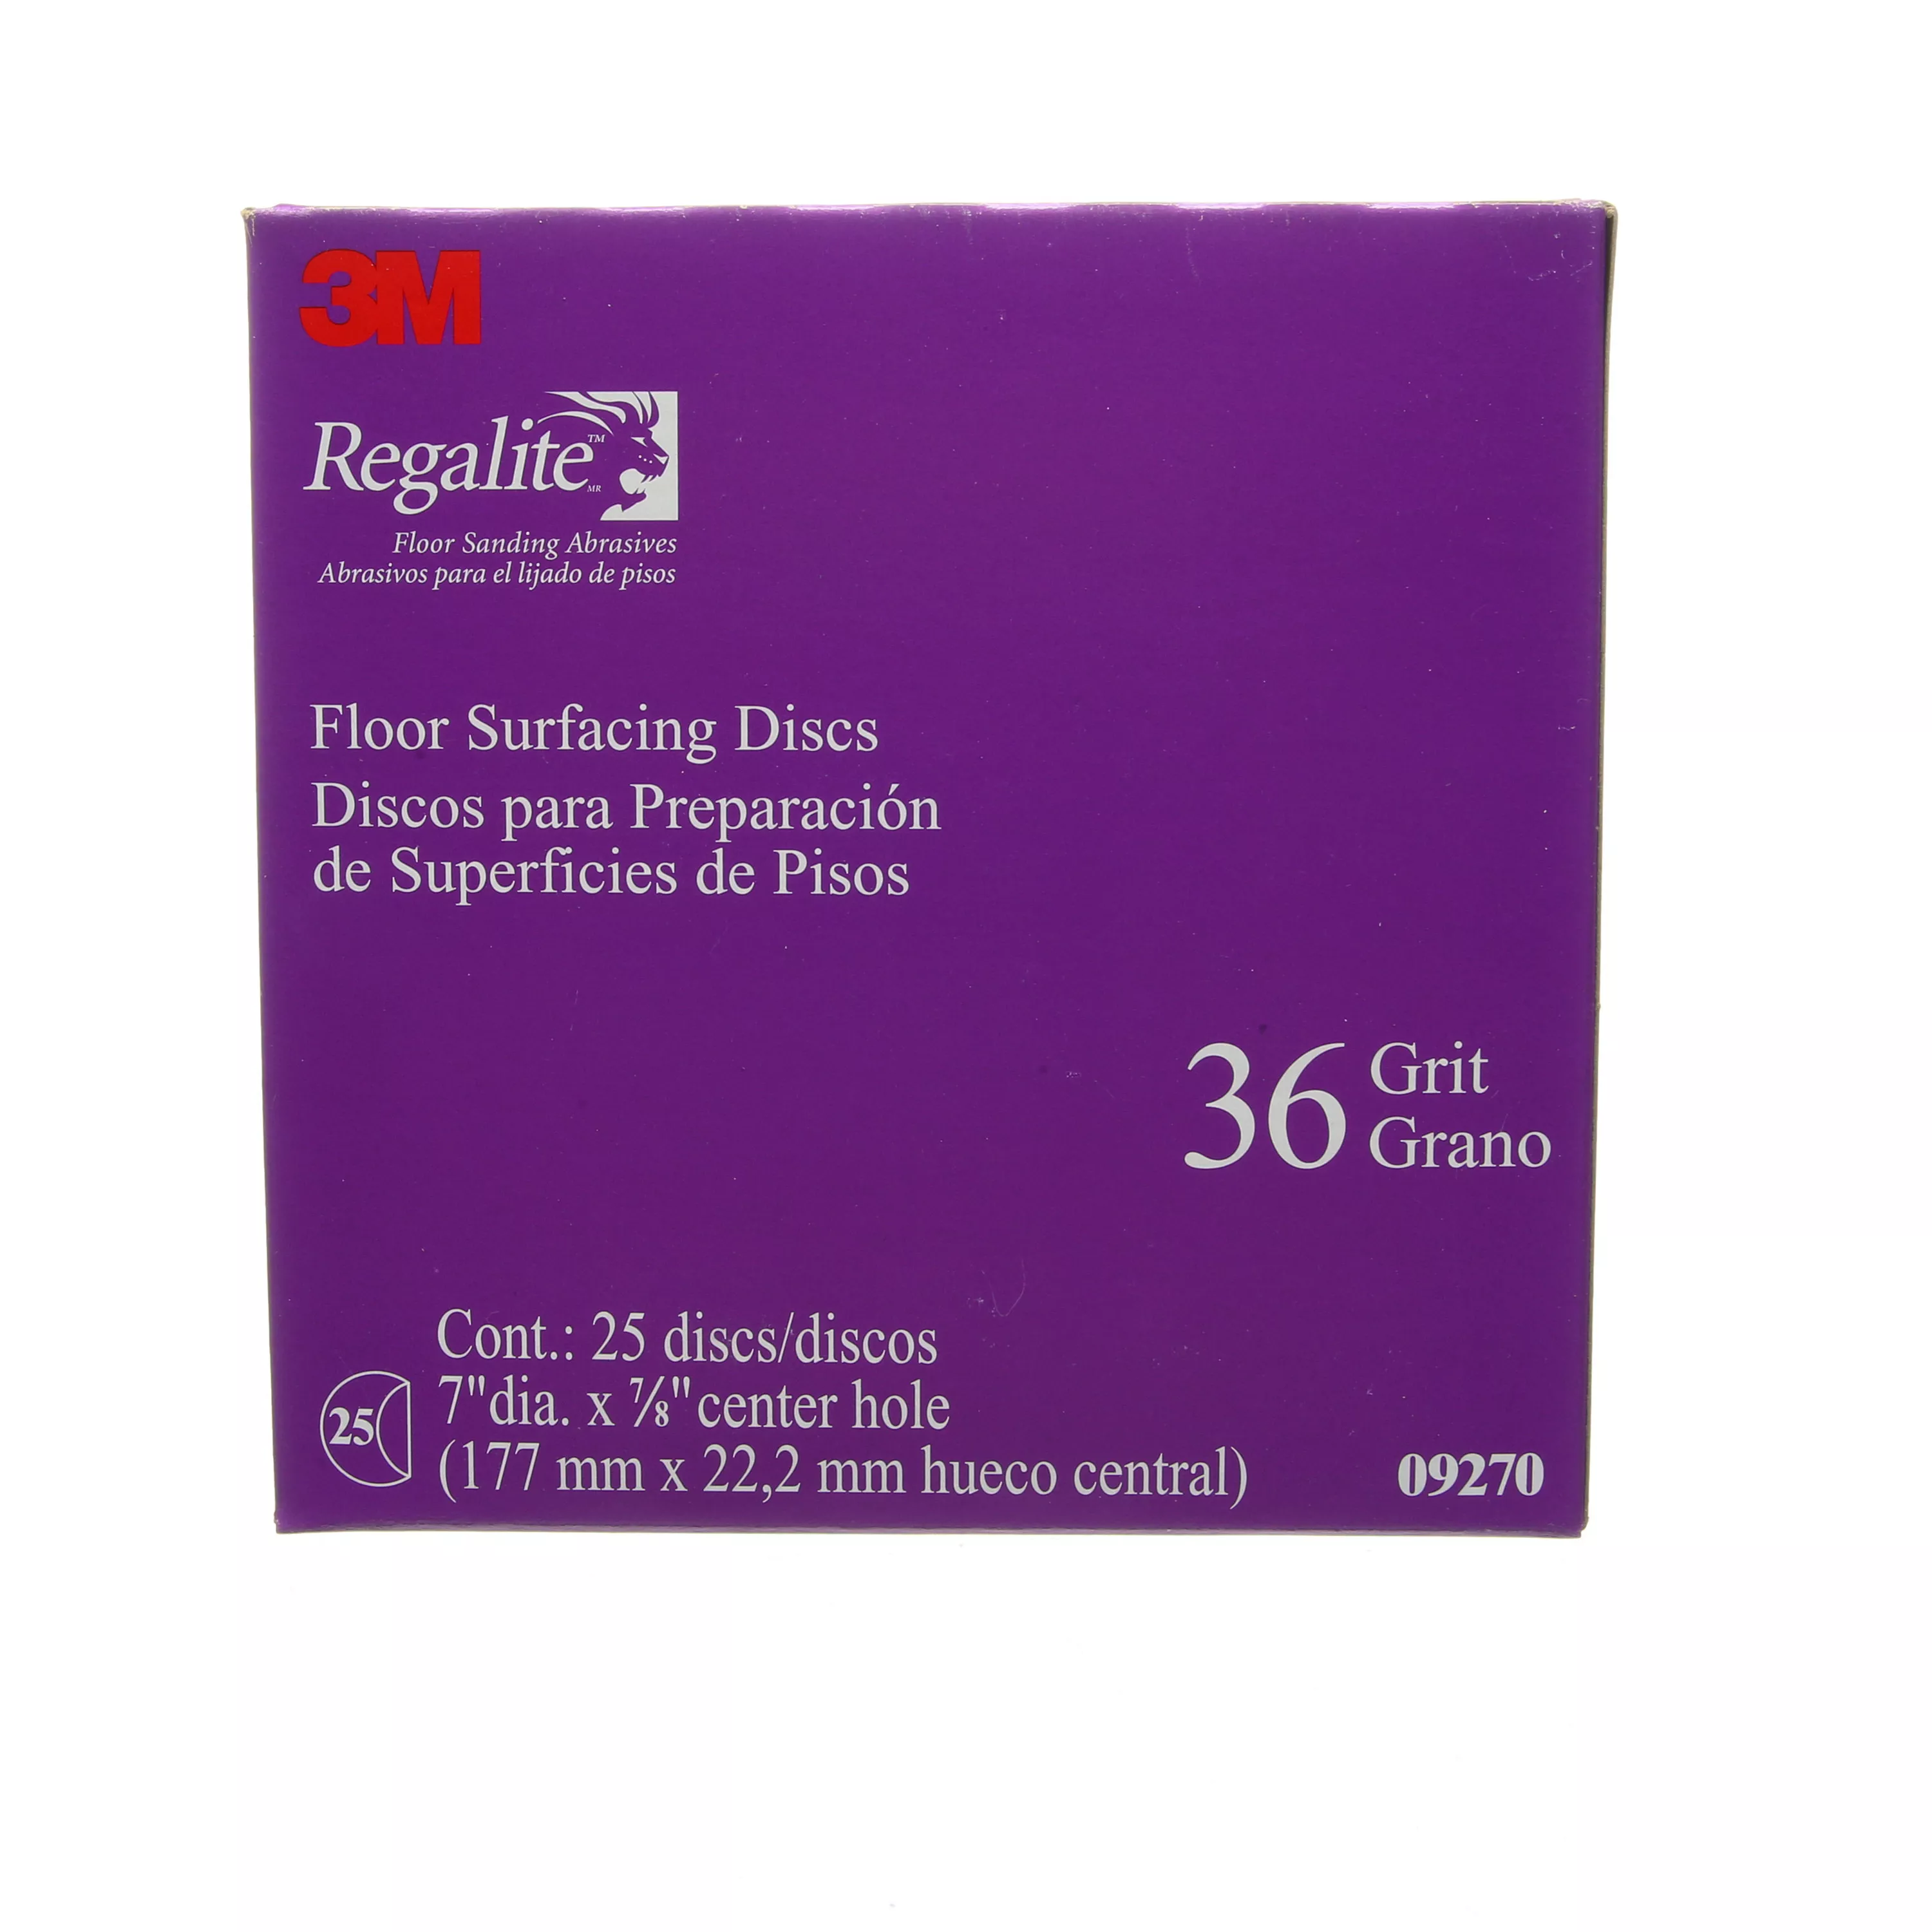 3M™ Regalite™ Floor Surfacing Discs 09270, 7 in x 7/8 in, 752I, 36 Grit,
200/case